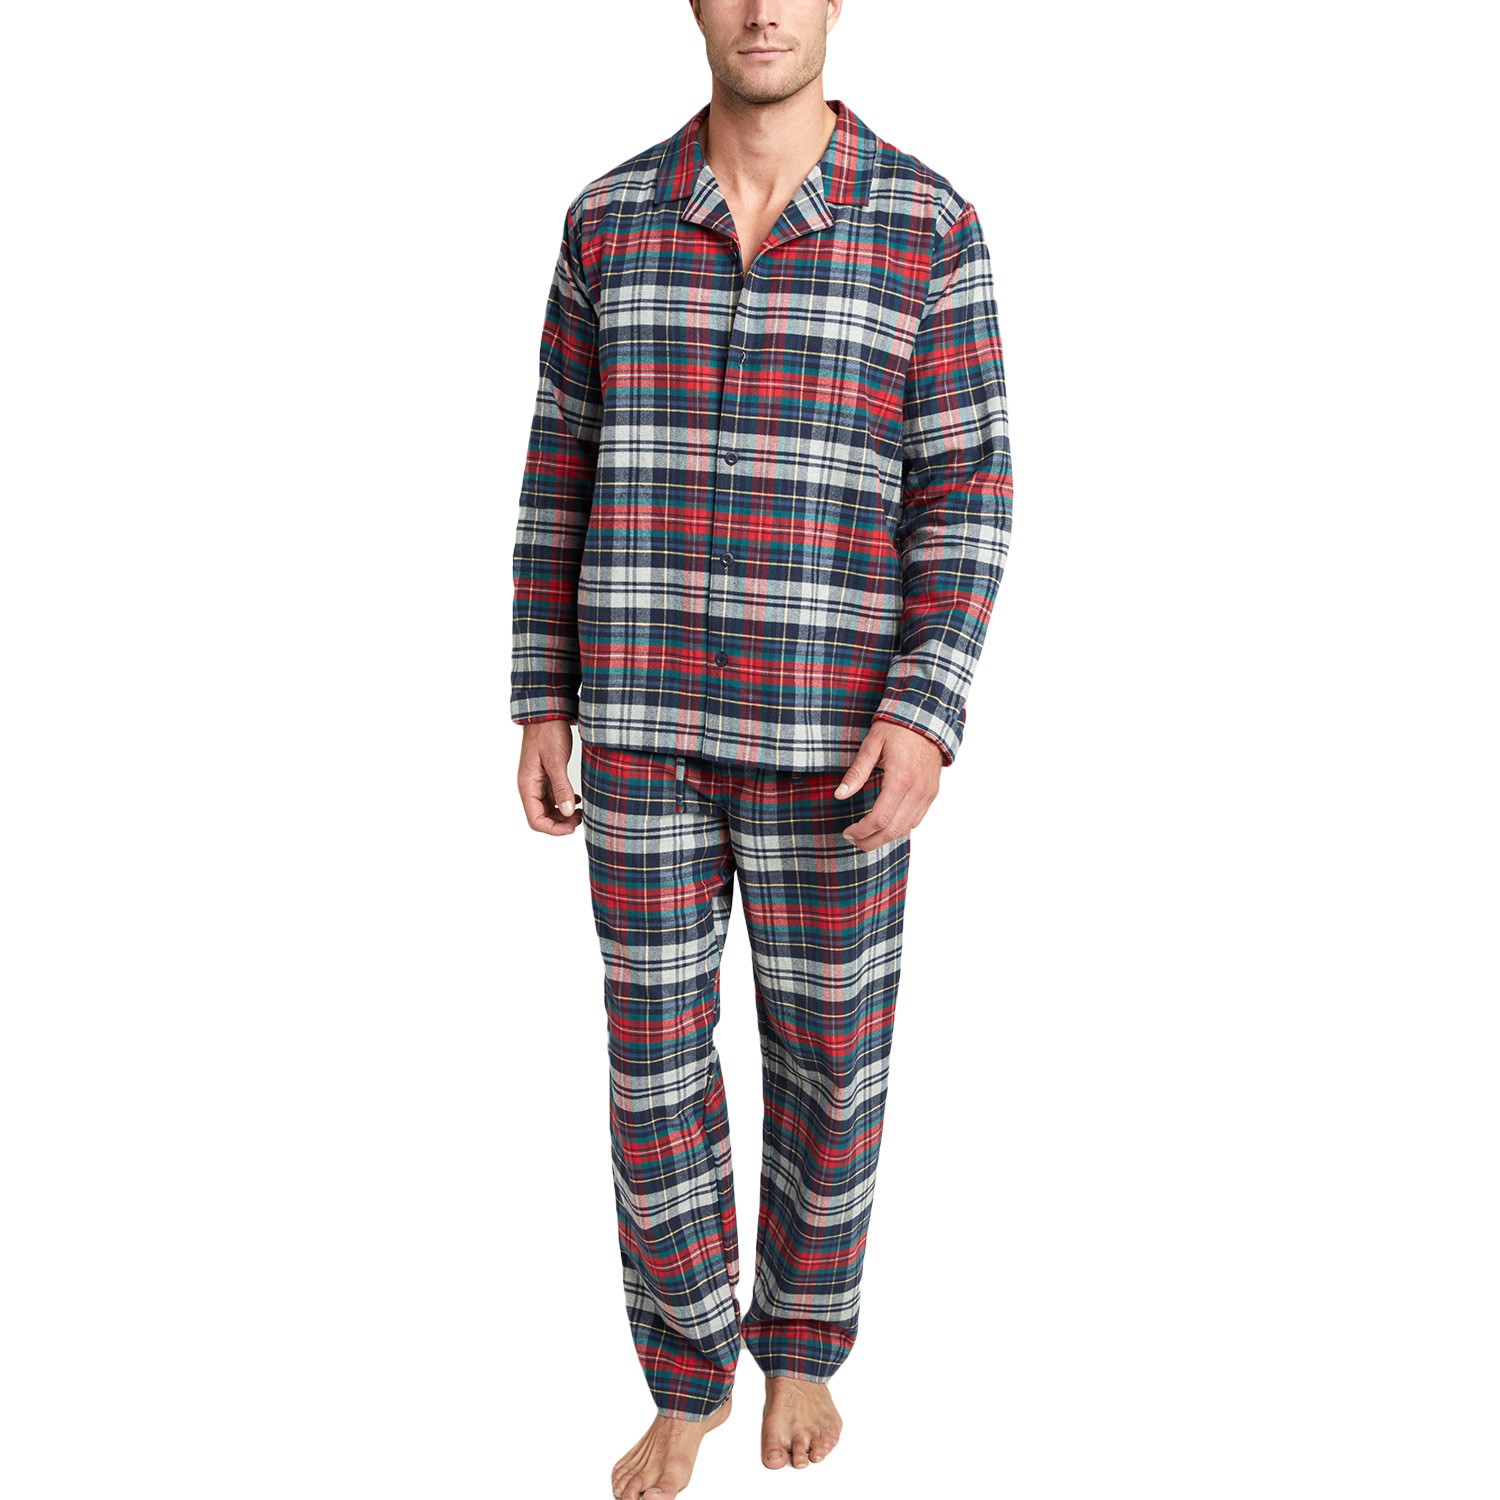 Jockey USA Originals Flannel Pyjama